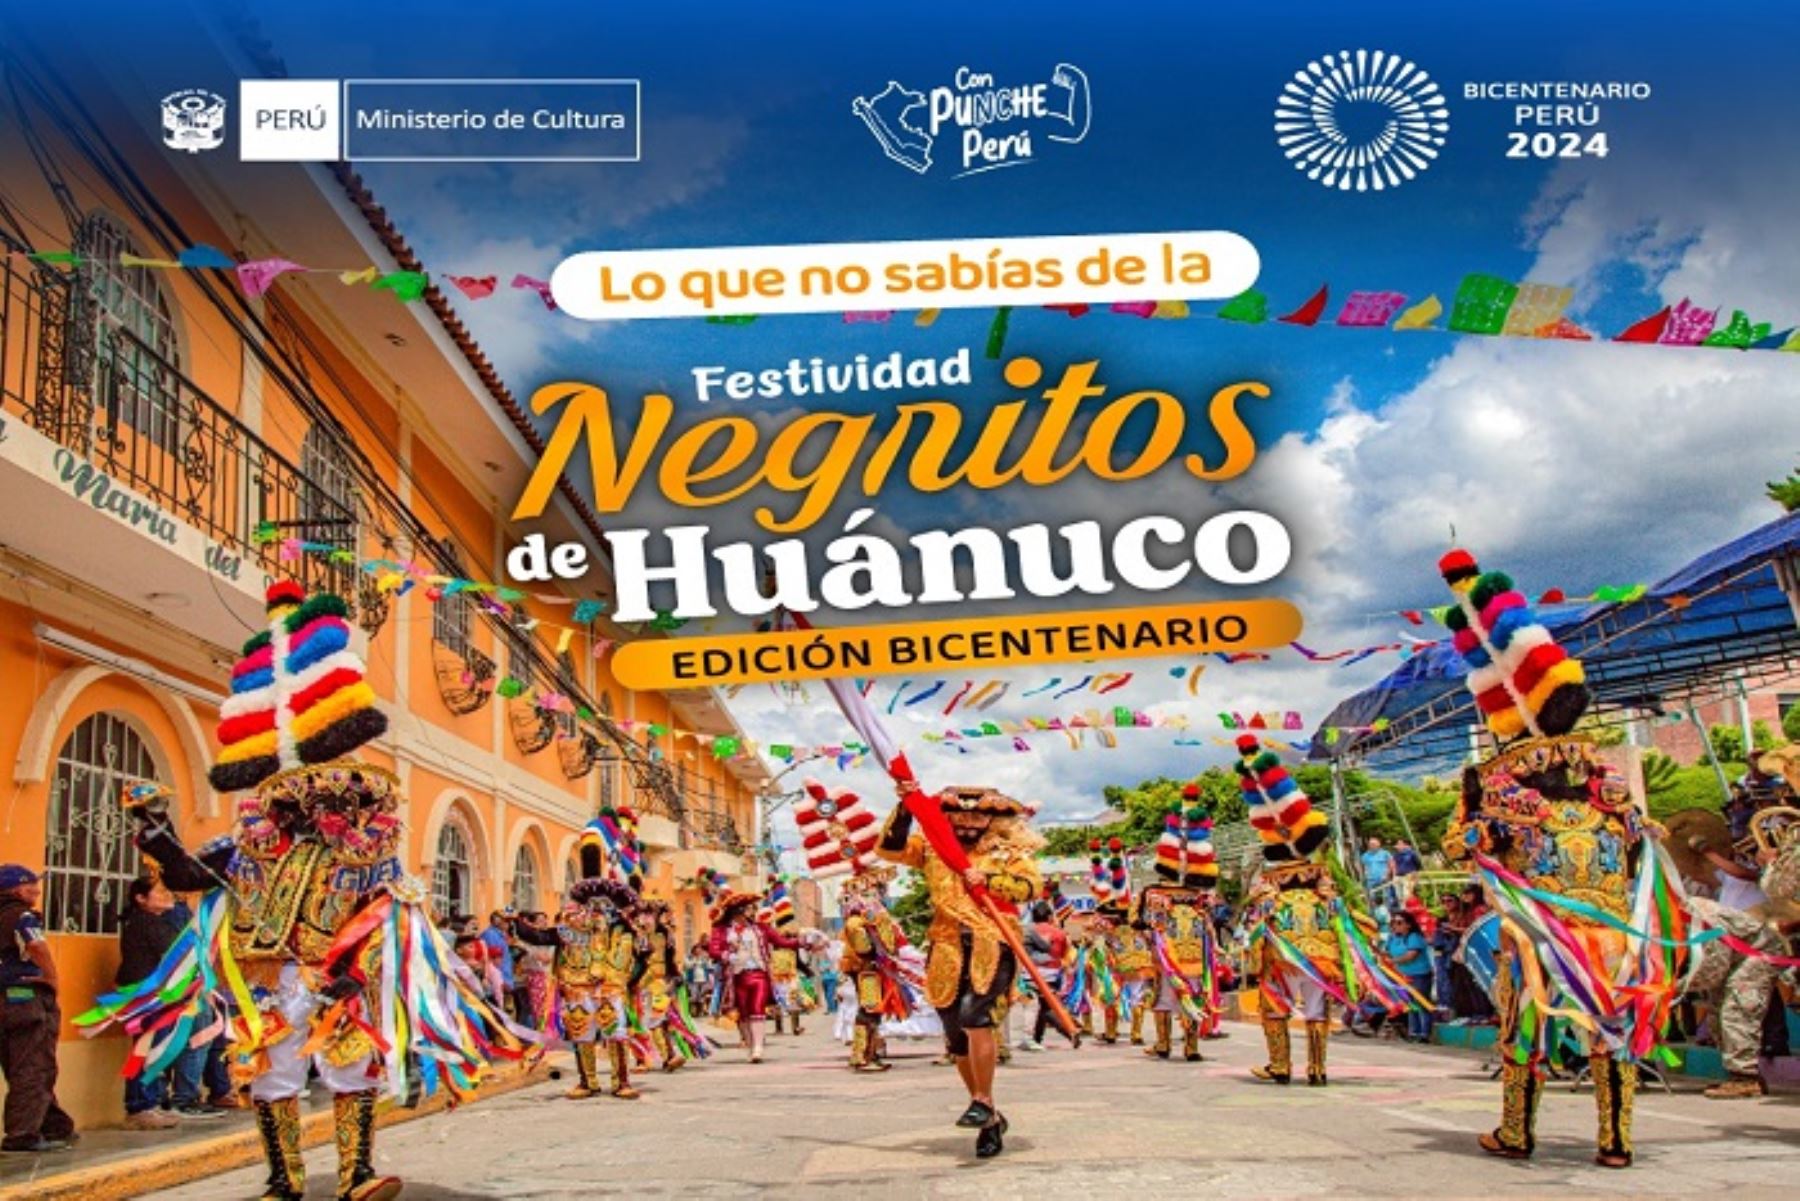 Huánuco espera 50,000 turistas con festividad Danza de los Negritos Edición Bicentenario